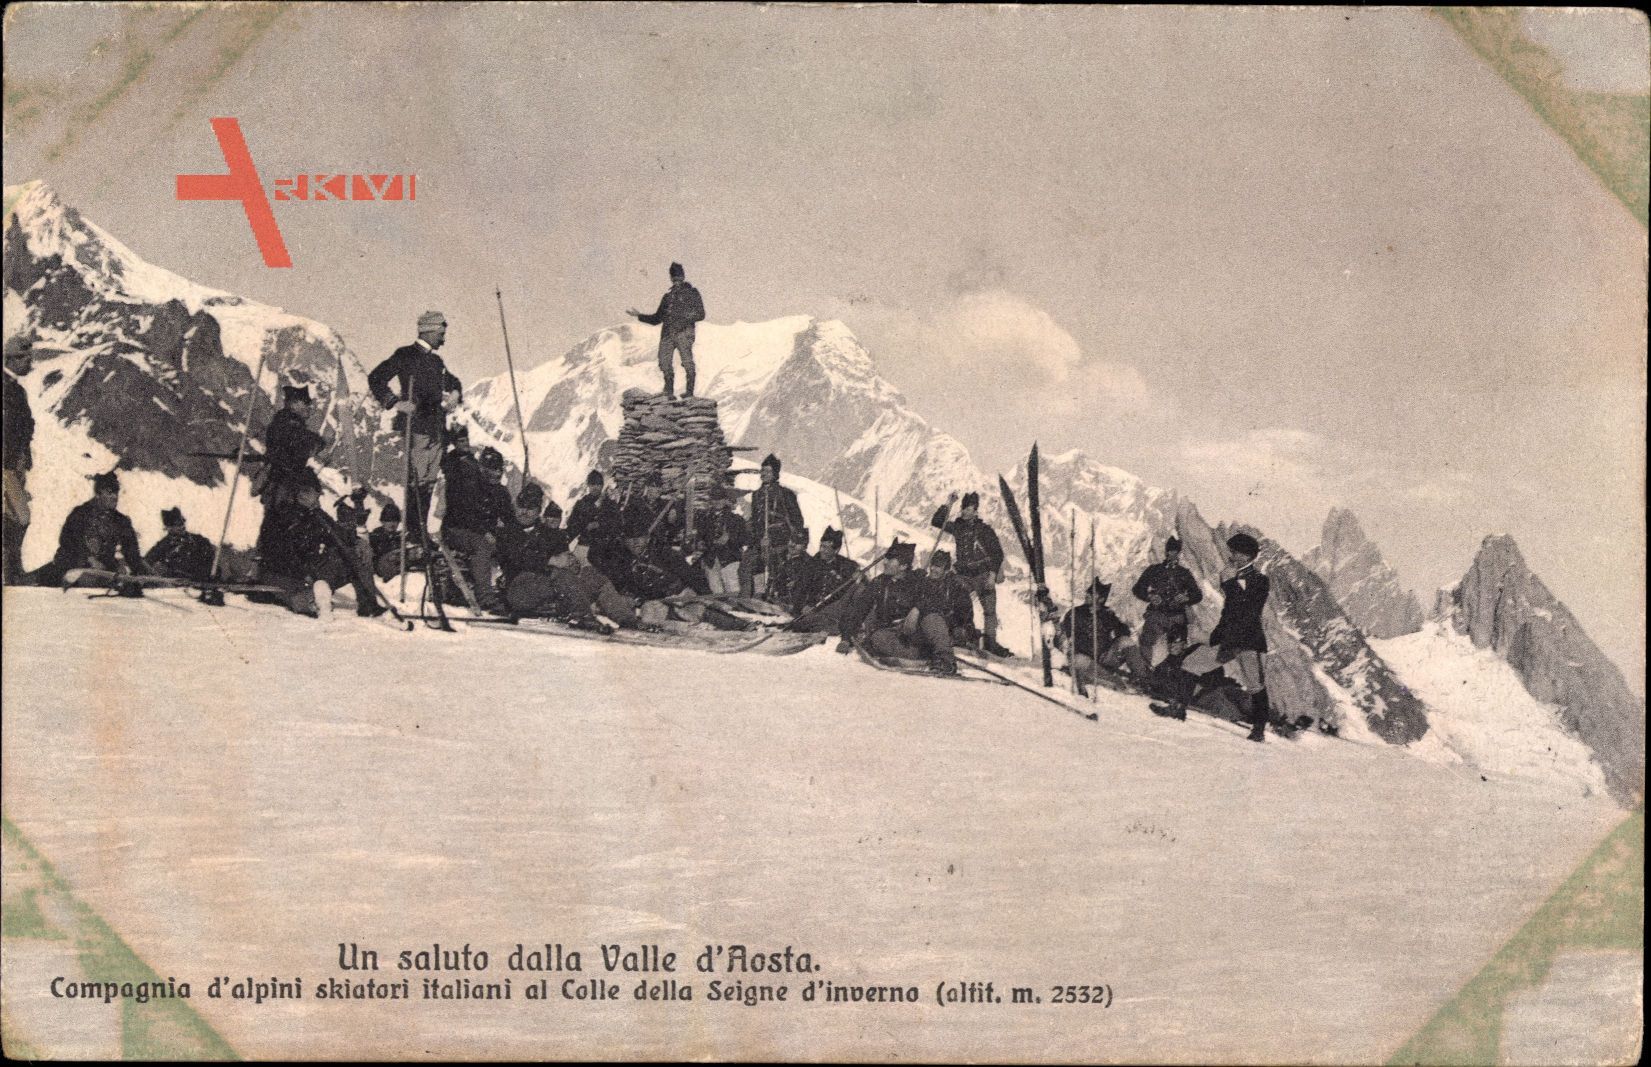 Un saluto dalla Valle dAosta, Compagnia dalpini skiatori italiani